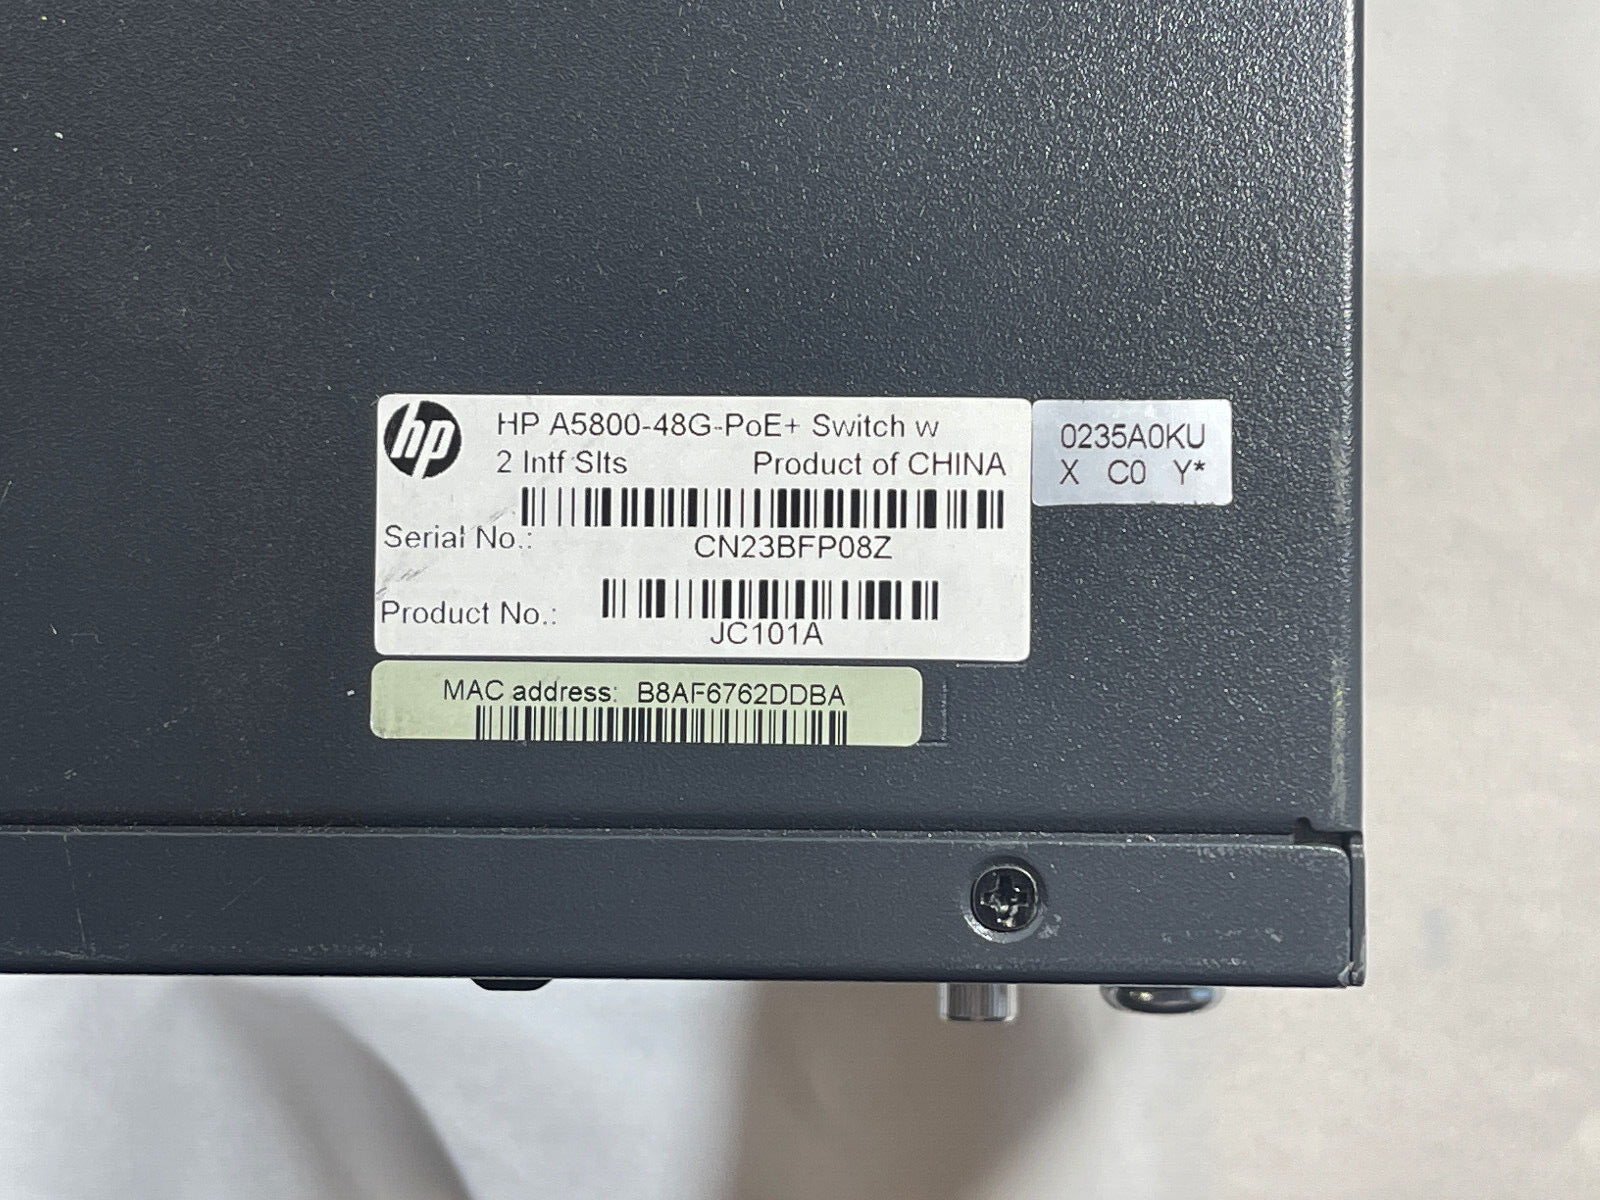 HPE JC101A FlexFabric 5800 48G POE+ 2-slot L3 Switch 48x RJ45 4x SFP Ears 1x PSU.